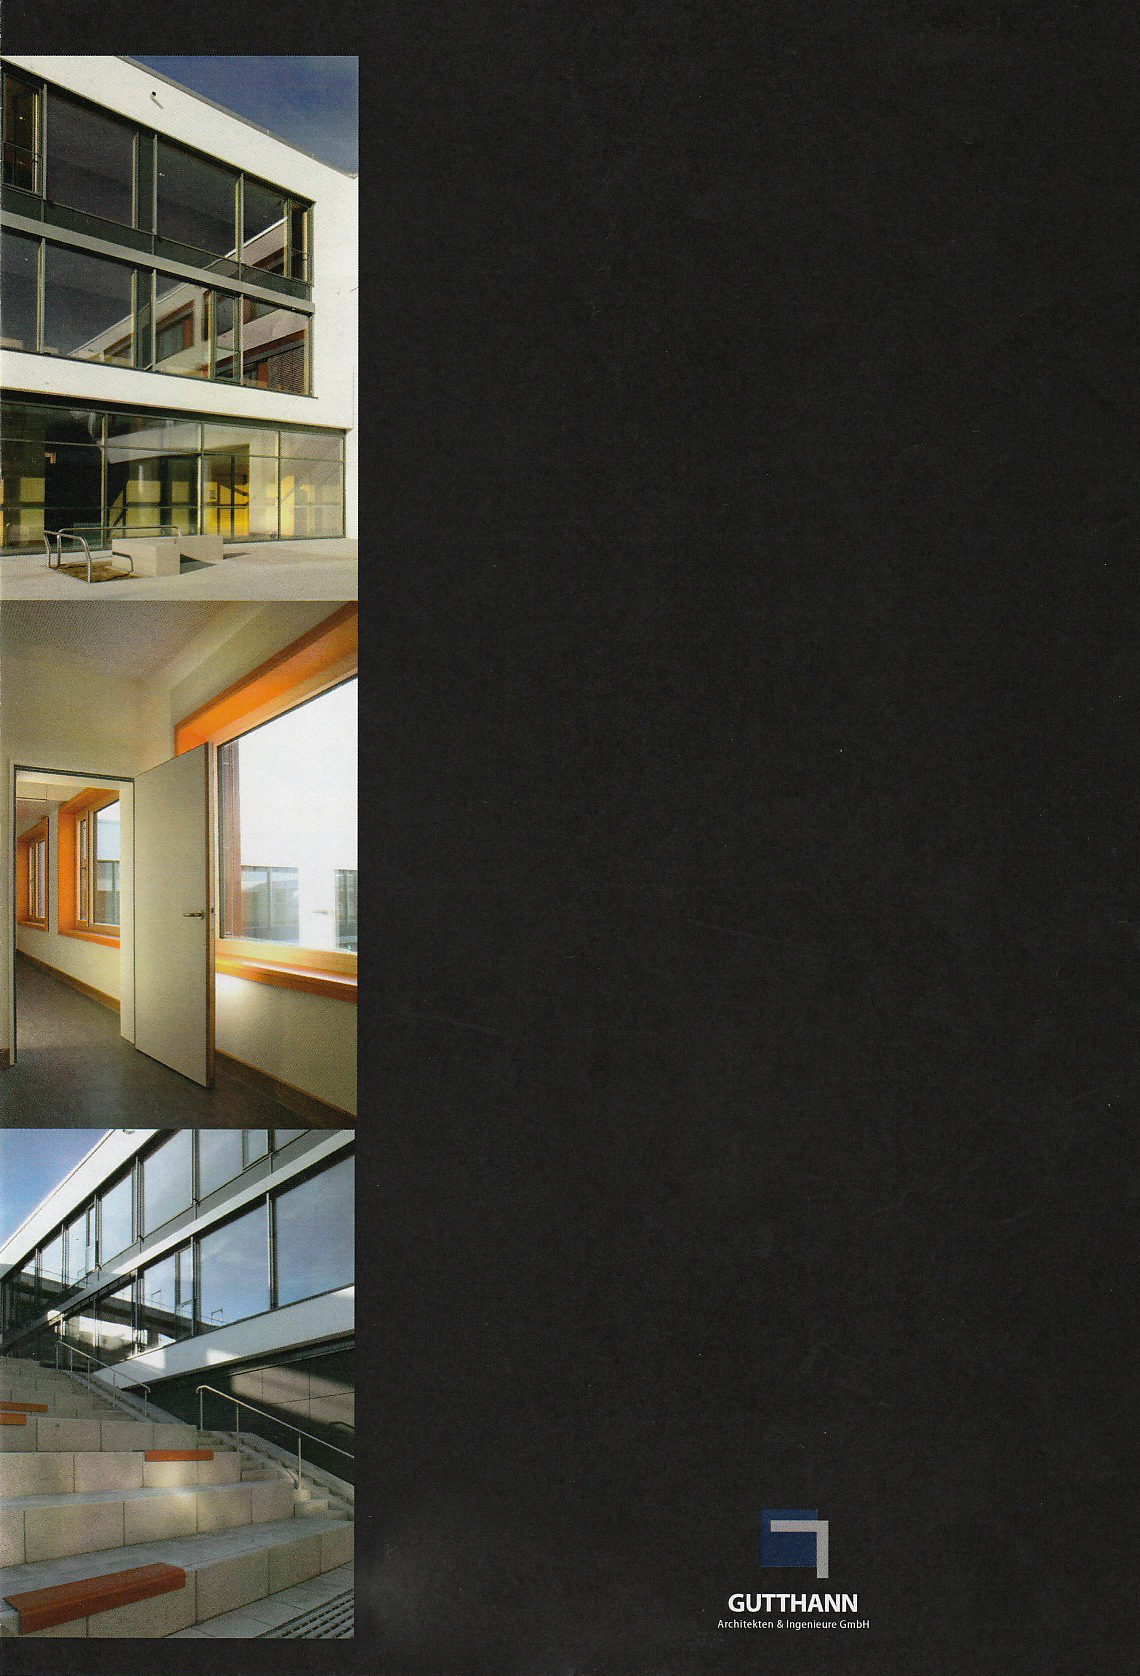 Faltblatt A3 - Gymnasium Lappersdorf, Architekt: ARGE Guthann & HIW Architekten / Objektfotografie, Bildbearbeitung, Layout